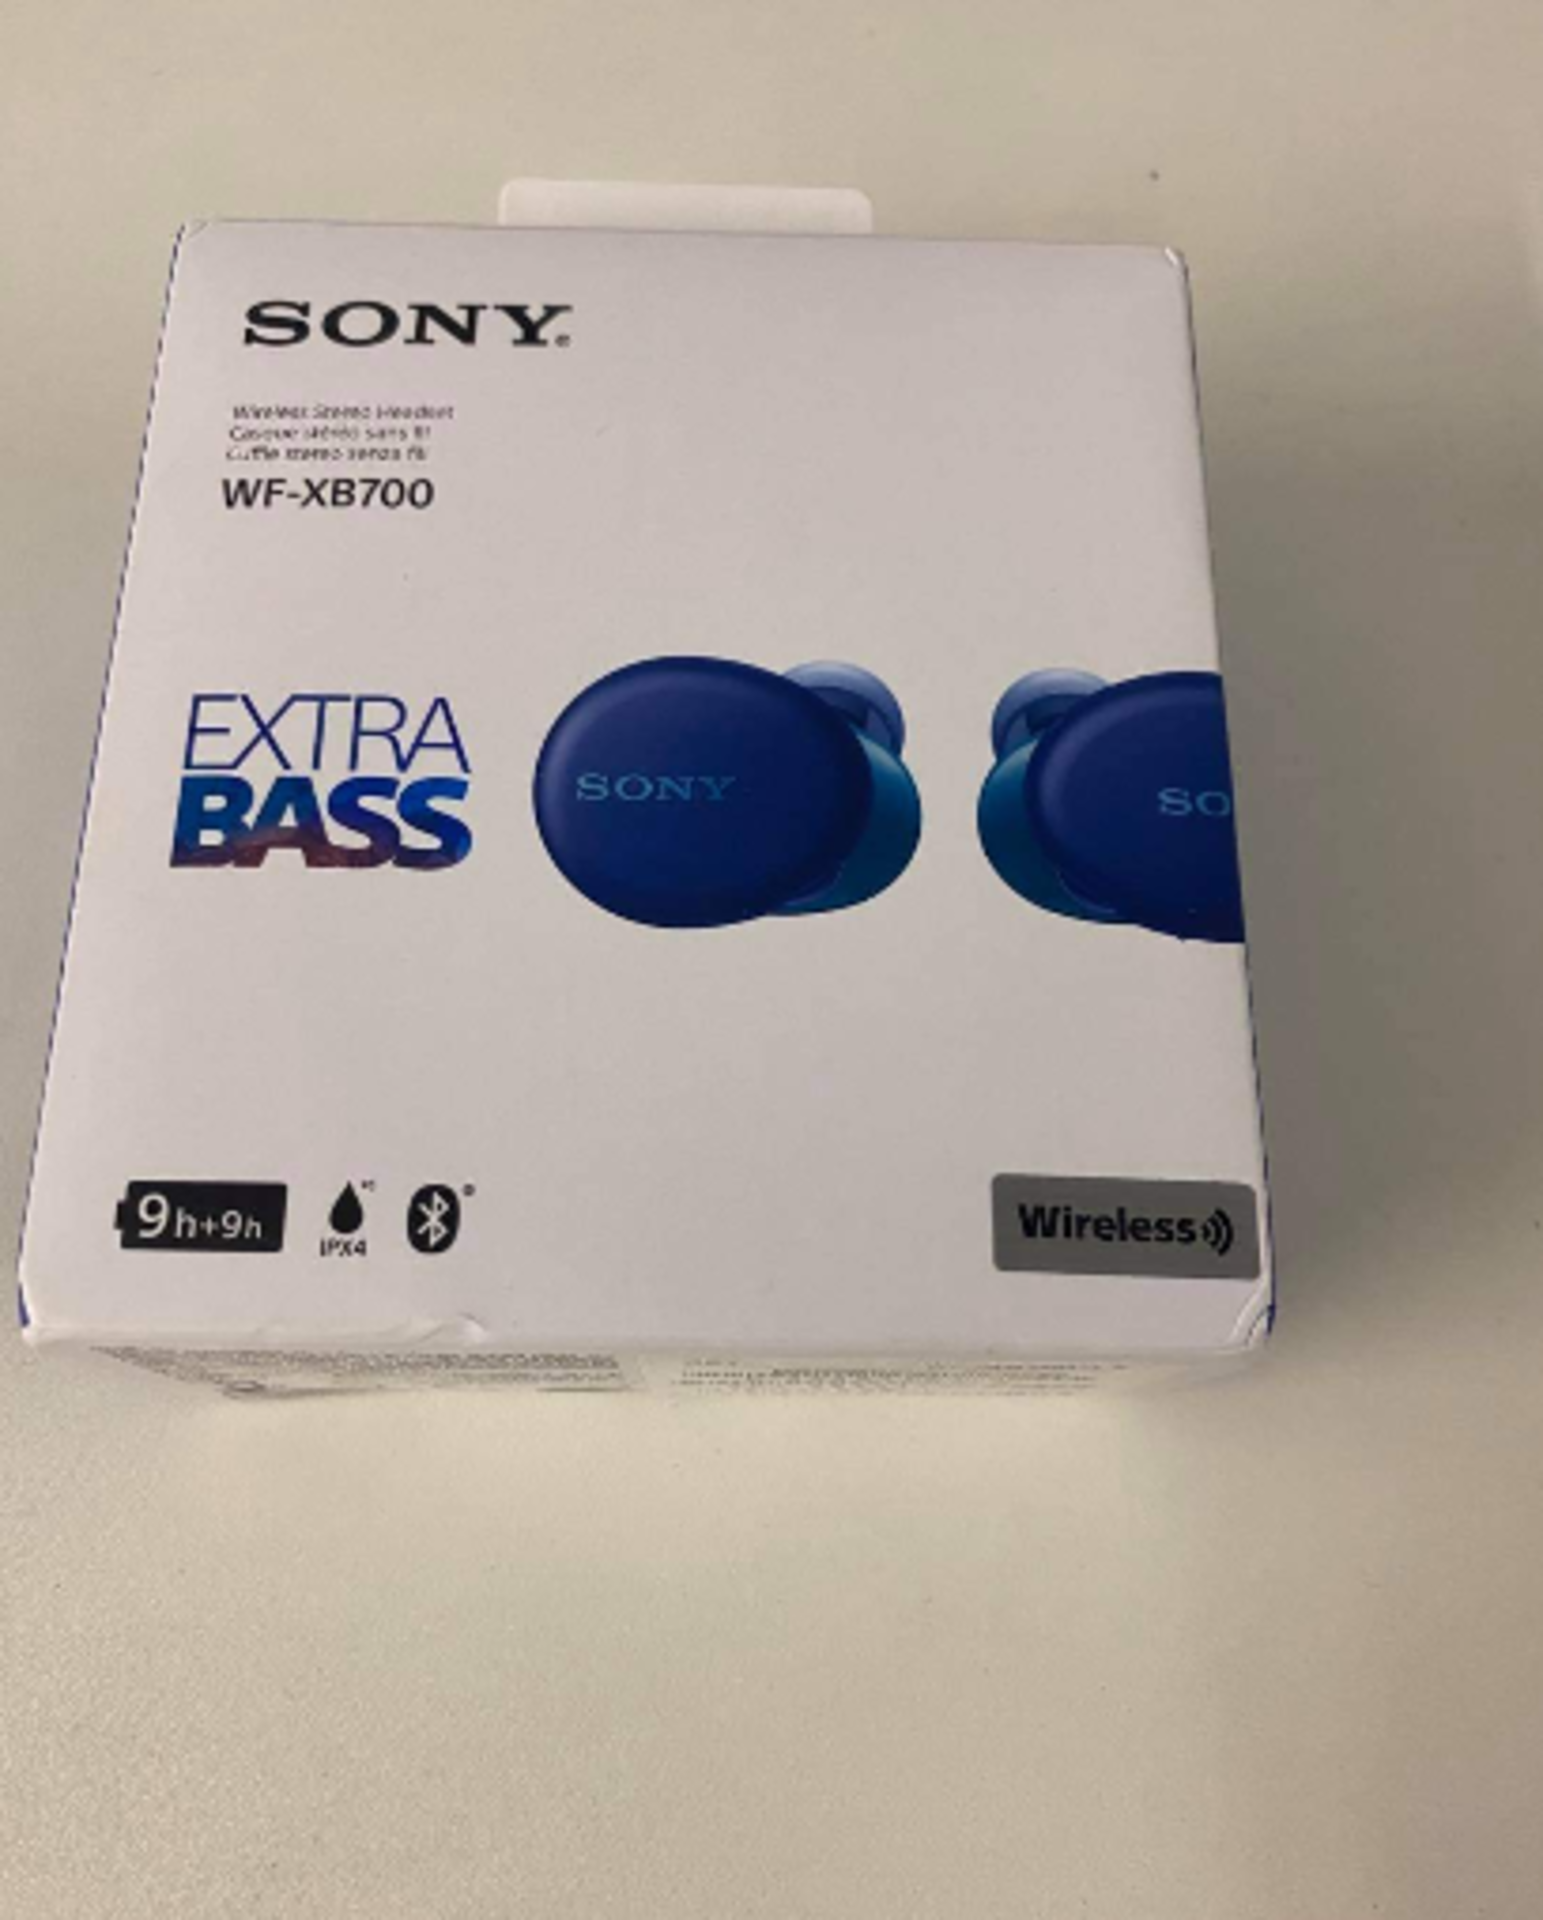 Sony Wf-Xb700 Wireless Headset